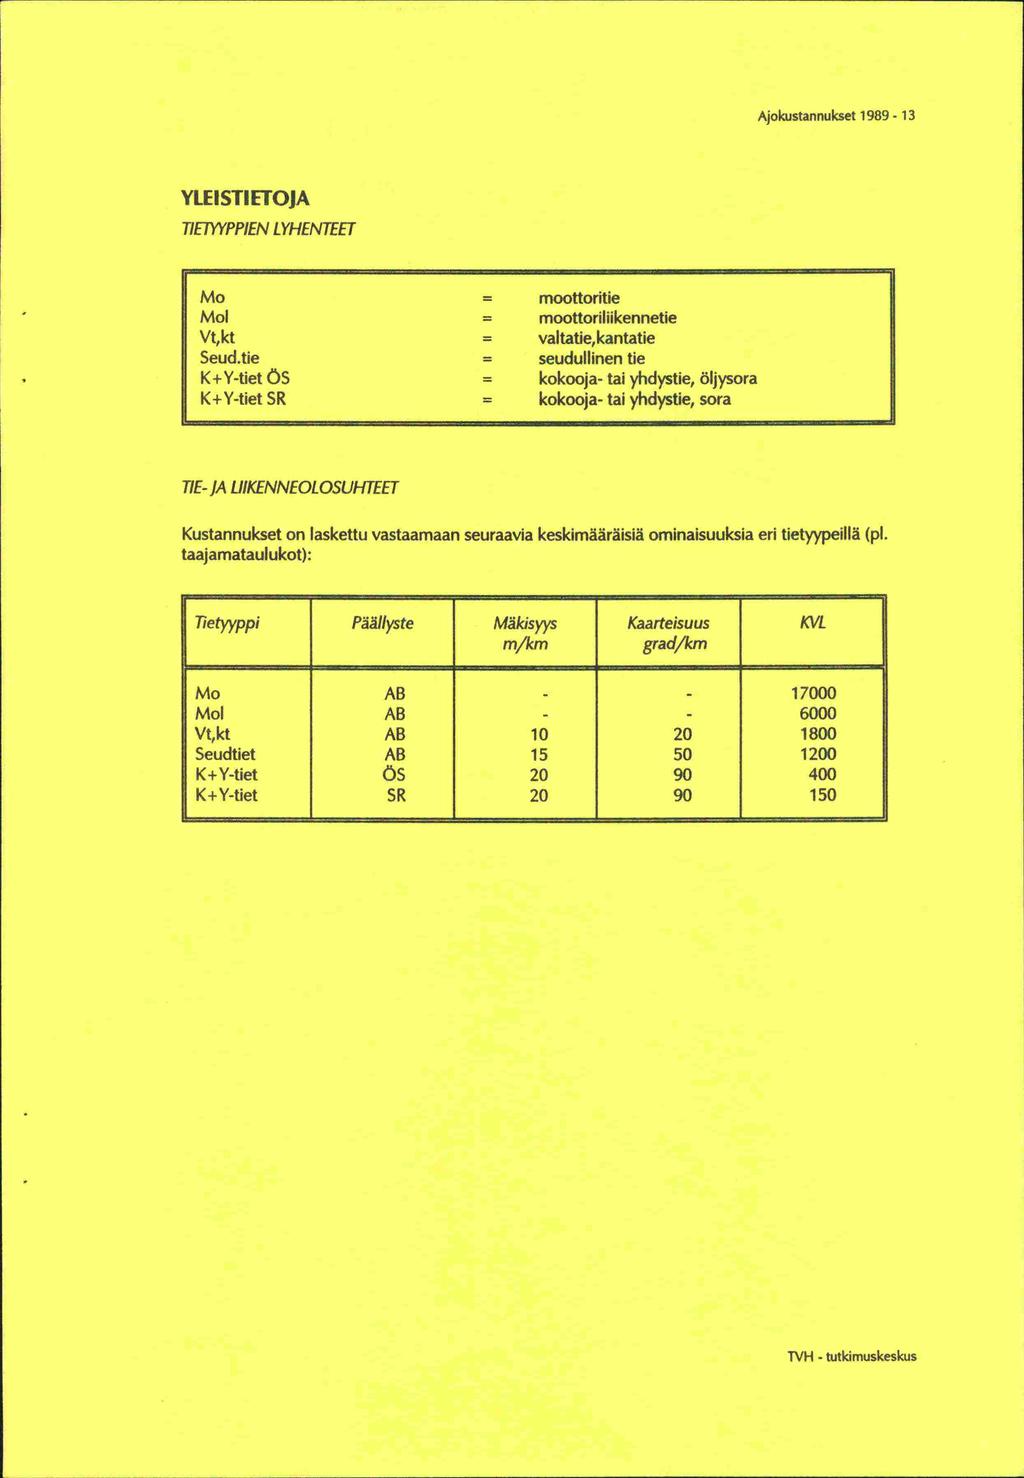 Ajokustannukset 1989-13 YWSTIETOJA TIETYYPPIEN LYHENTEET Mo = moottoritie Mol = moottoriliikennetie Vt,kt = vaitatie,kantatie Seud.